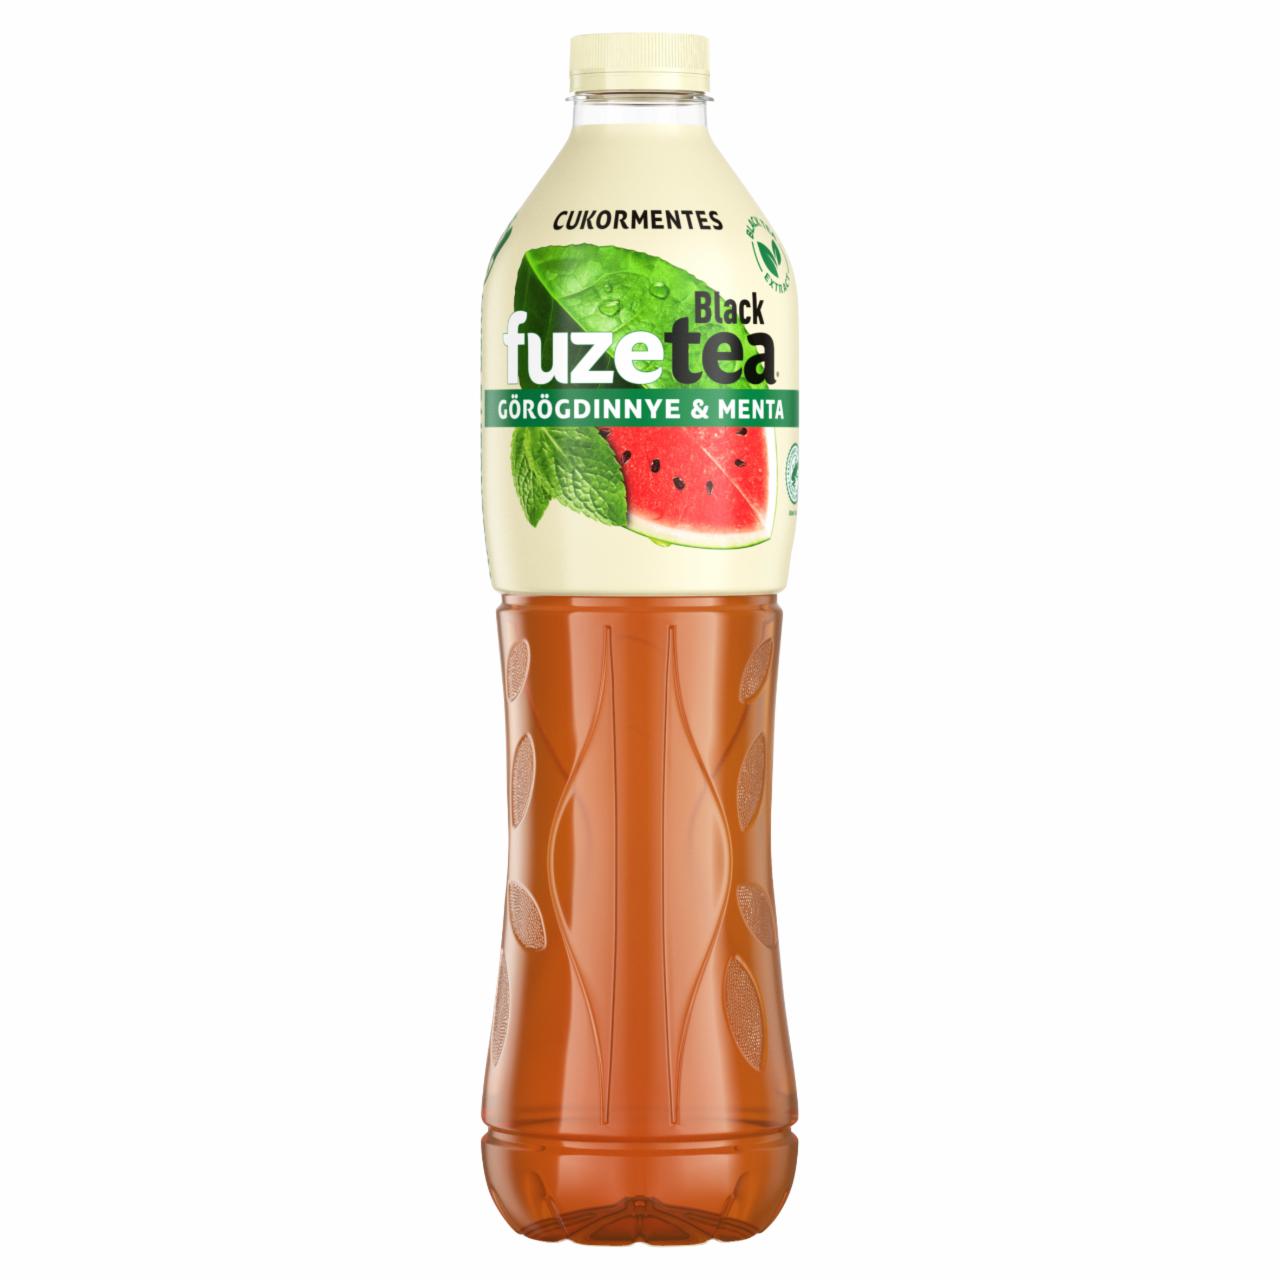 Képek - FUZETEA görögdinnye-menta ízesítésű ital fekete tea és menta kivonattal, édesítőszerekkel 1,5 l